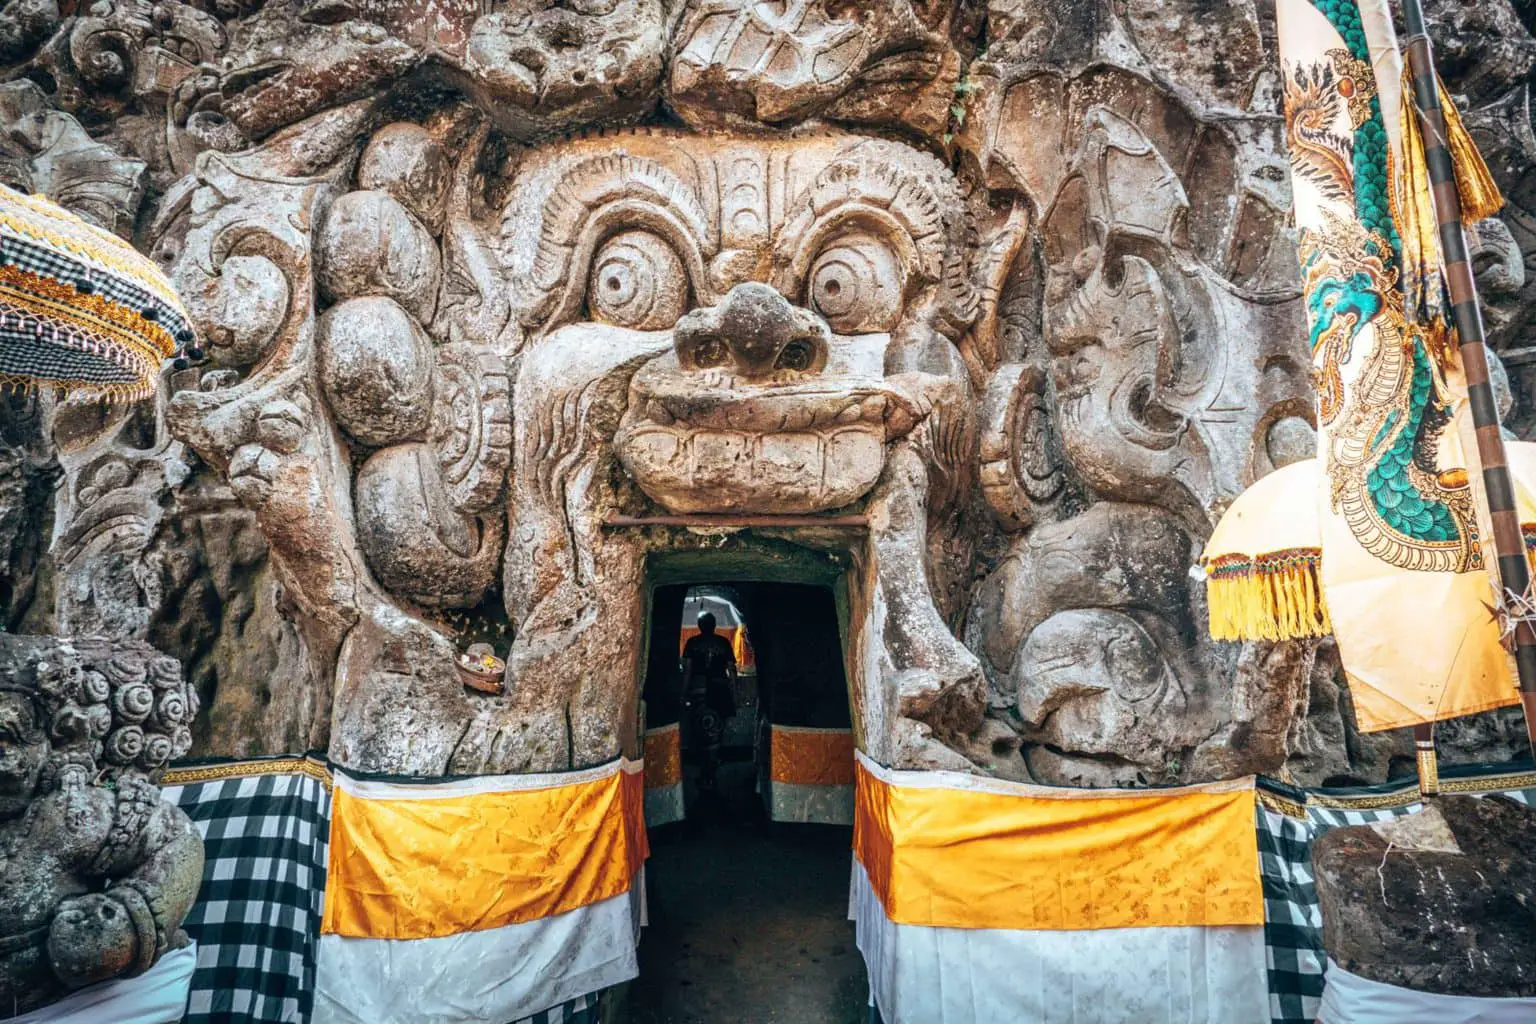 Ubud Waterfall Tour - Goa Gajah Temple rock face